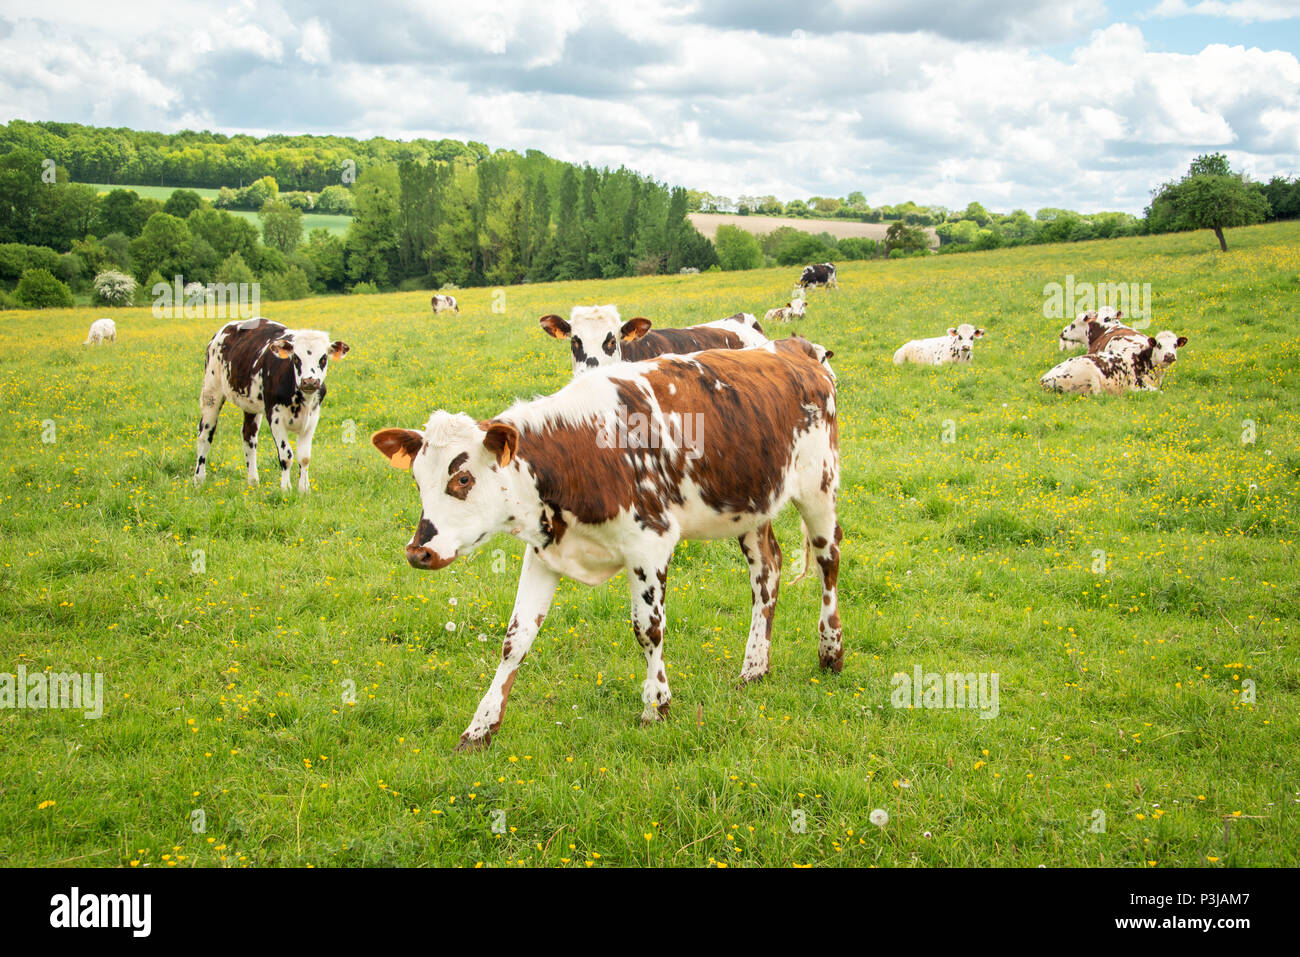 Stirn und weiße Kühe grasen auf Grasbewachsenen grünes Feld in Perche, Frankreich. Sommer Landschaft Landschaft und Weide für Rinder Stockfoto